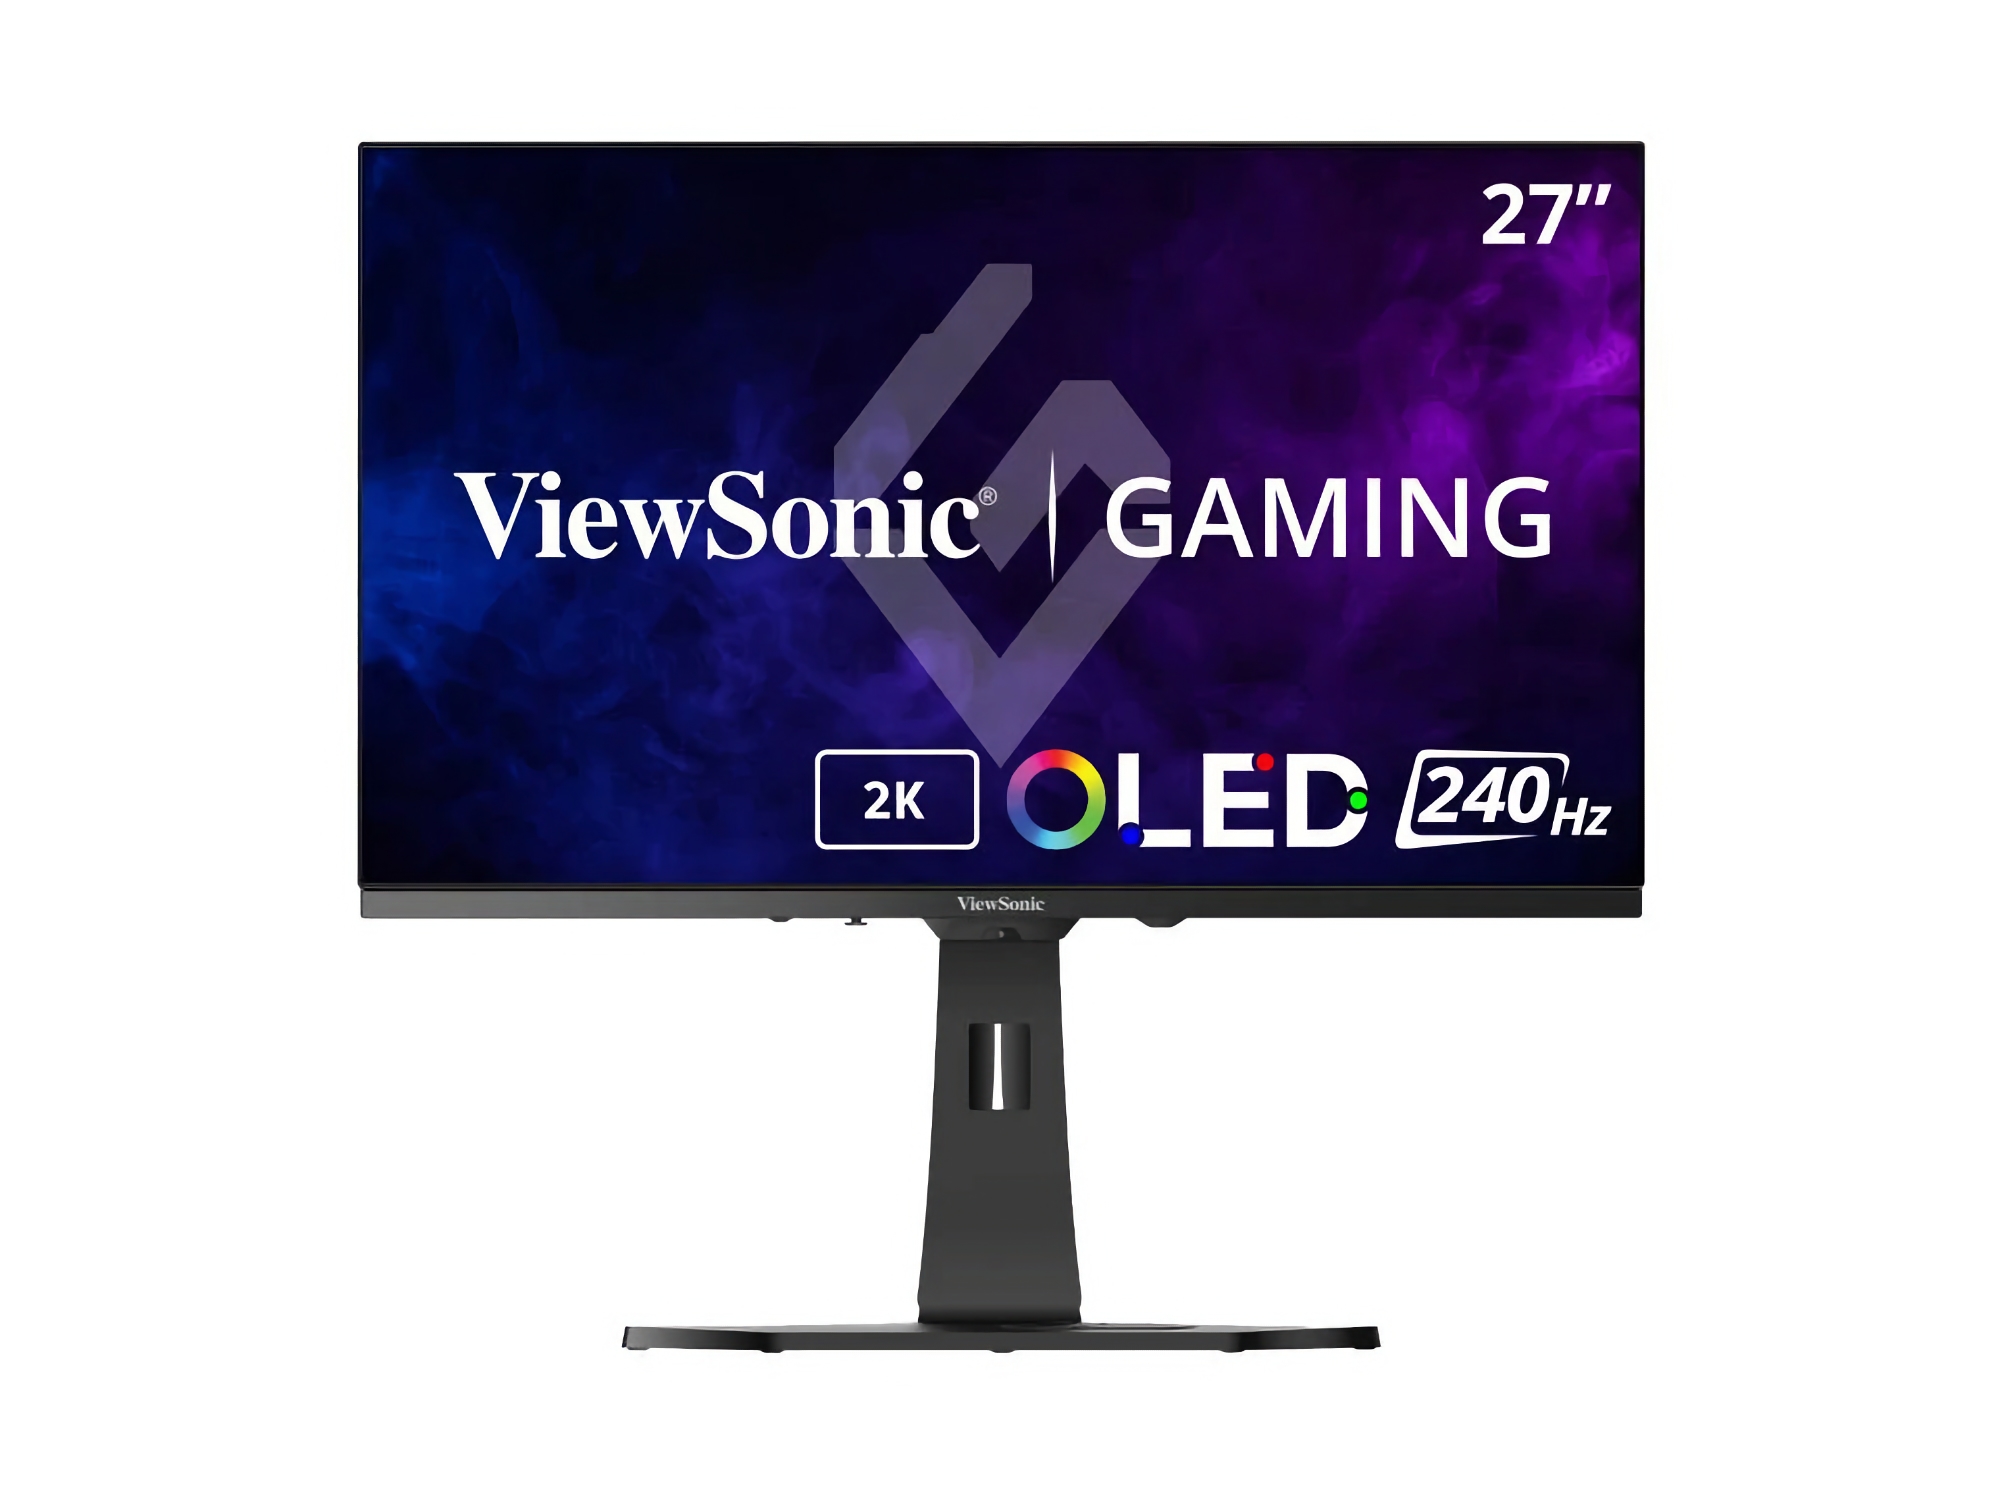 ViewSonic zaprezentował XG272-2K: monitor do gier z ekranem OLED 240 Hz